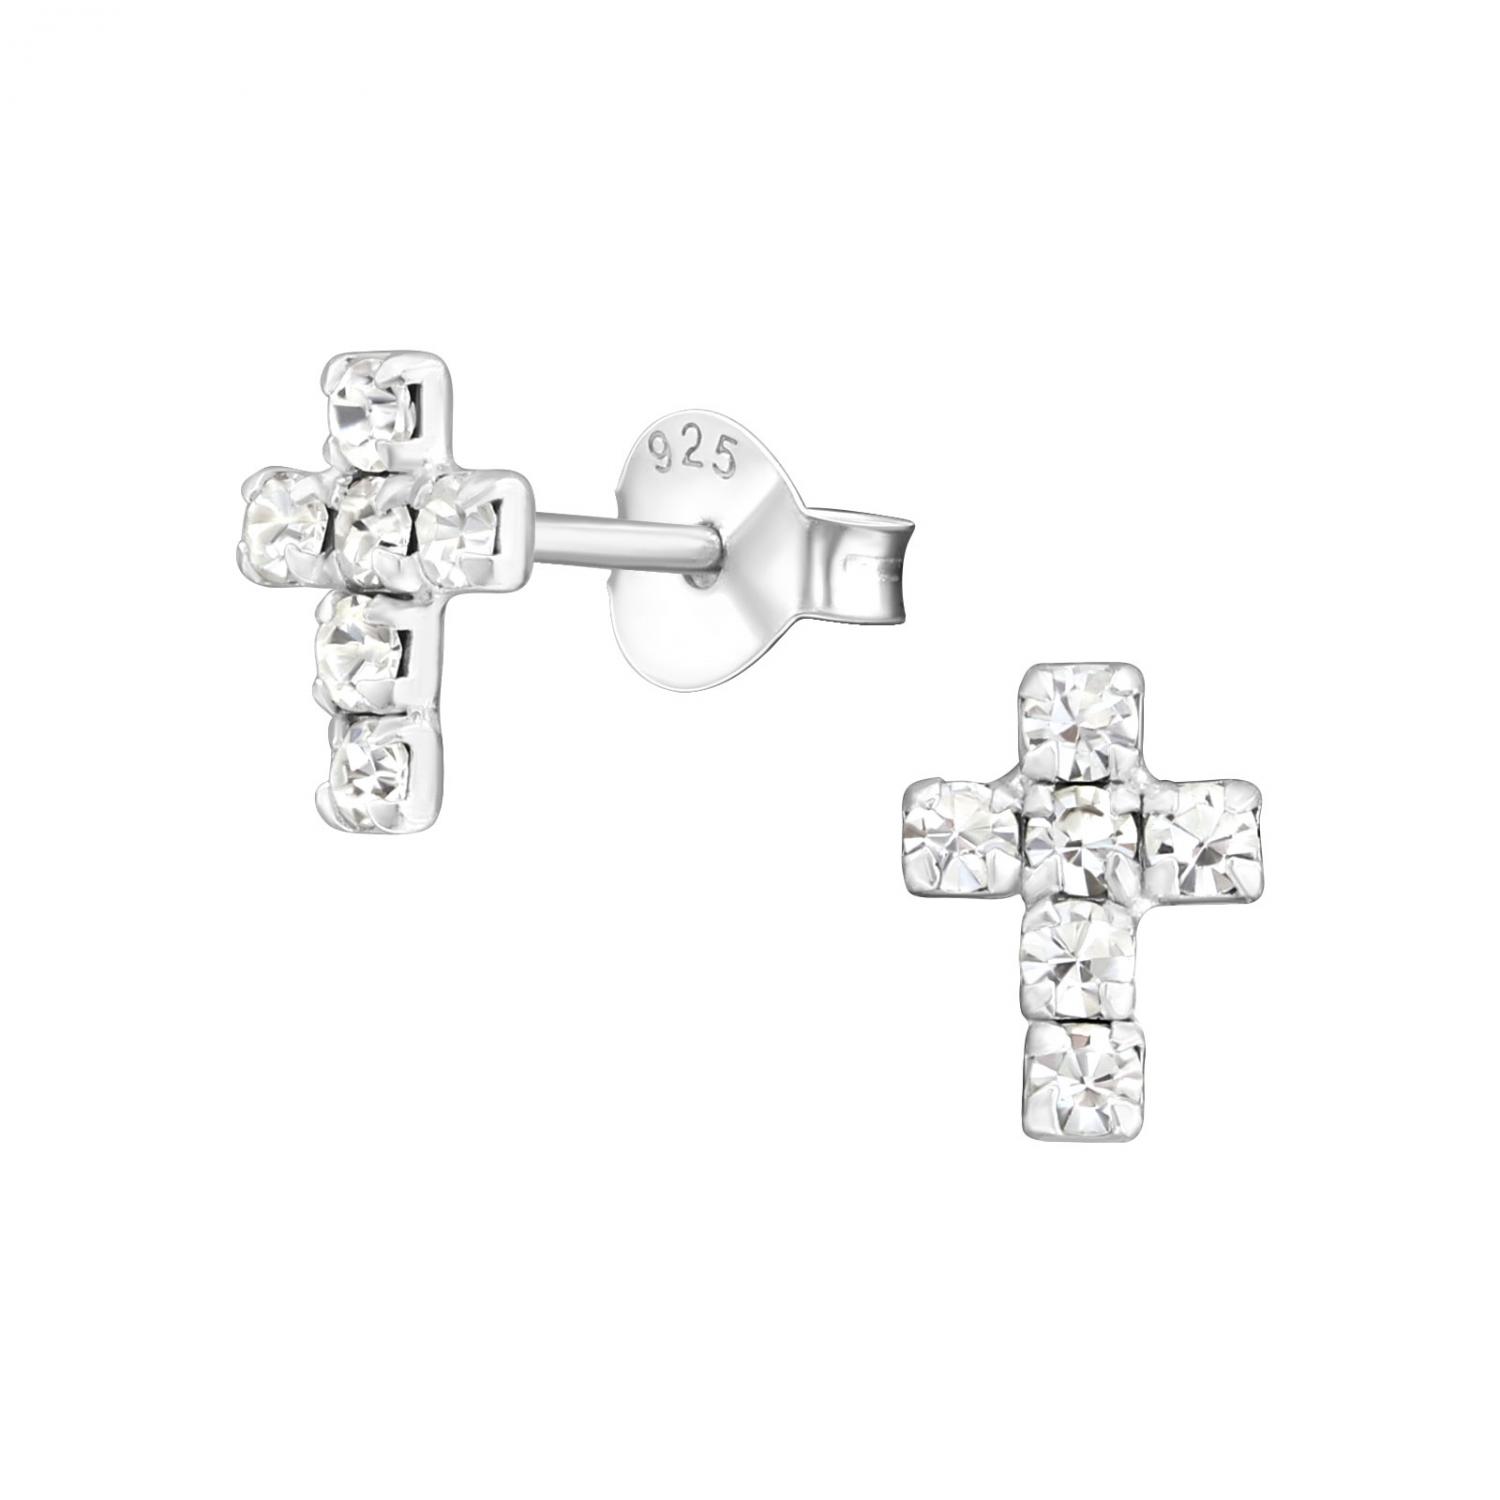 Kors med kristaller - Studs - Örhängen i äkta silver